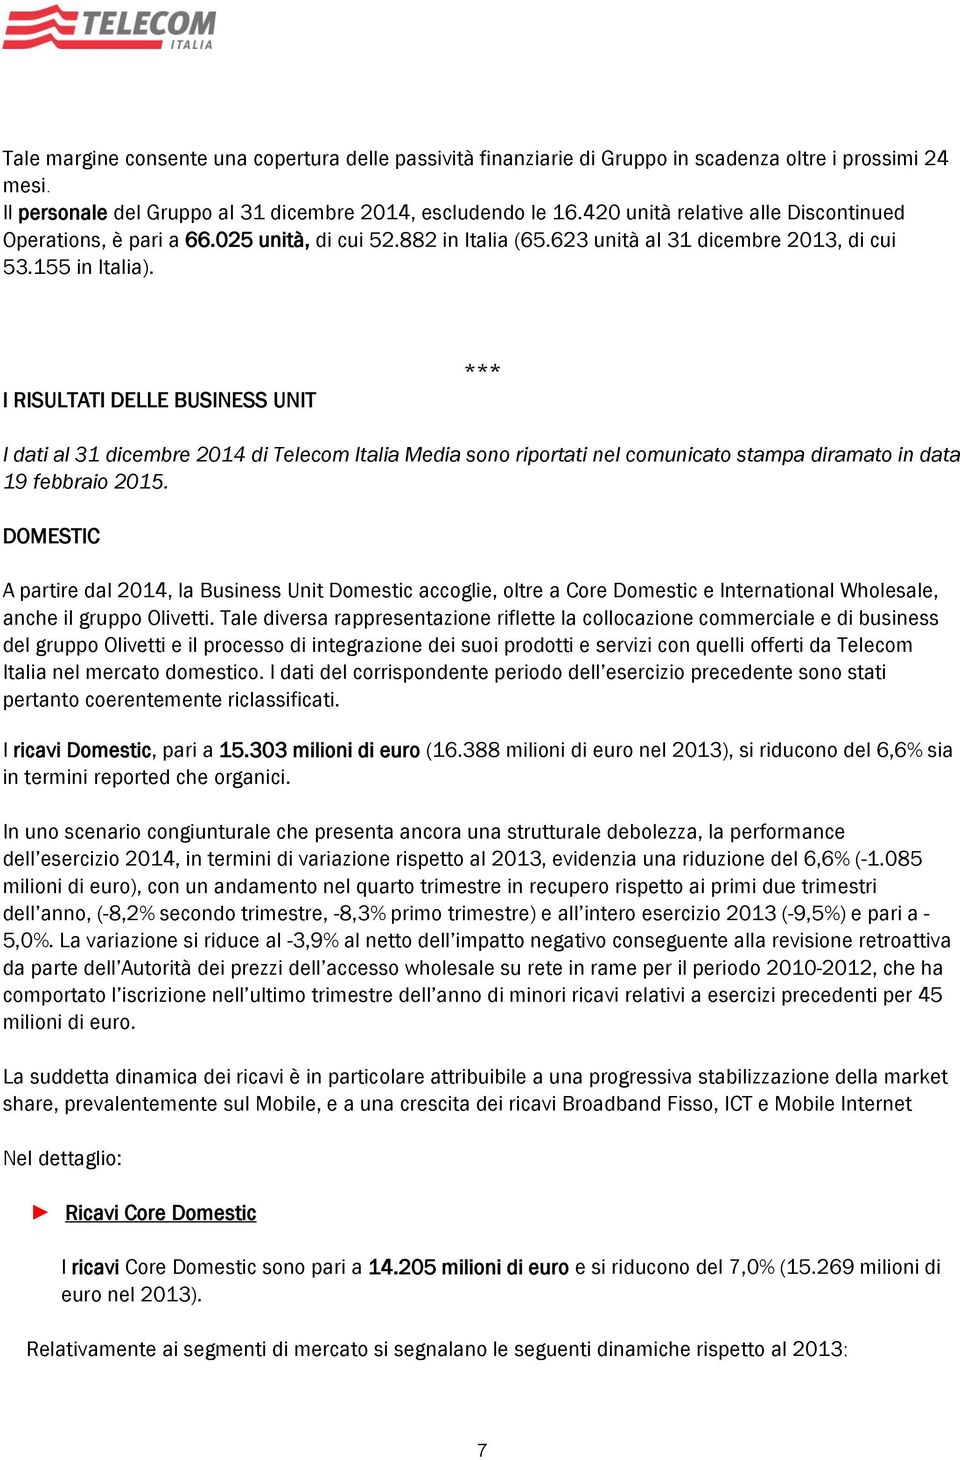 I RISULTATI DELLE BUSINESS UNIT *** I dati al 31 dicembre 2014 di Telecom Italia Media sono riportati nel comunicato stampa diramato in data 19 febbraio 2015.